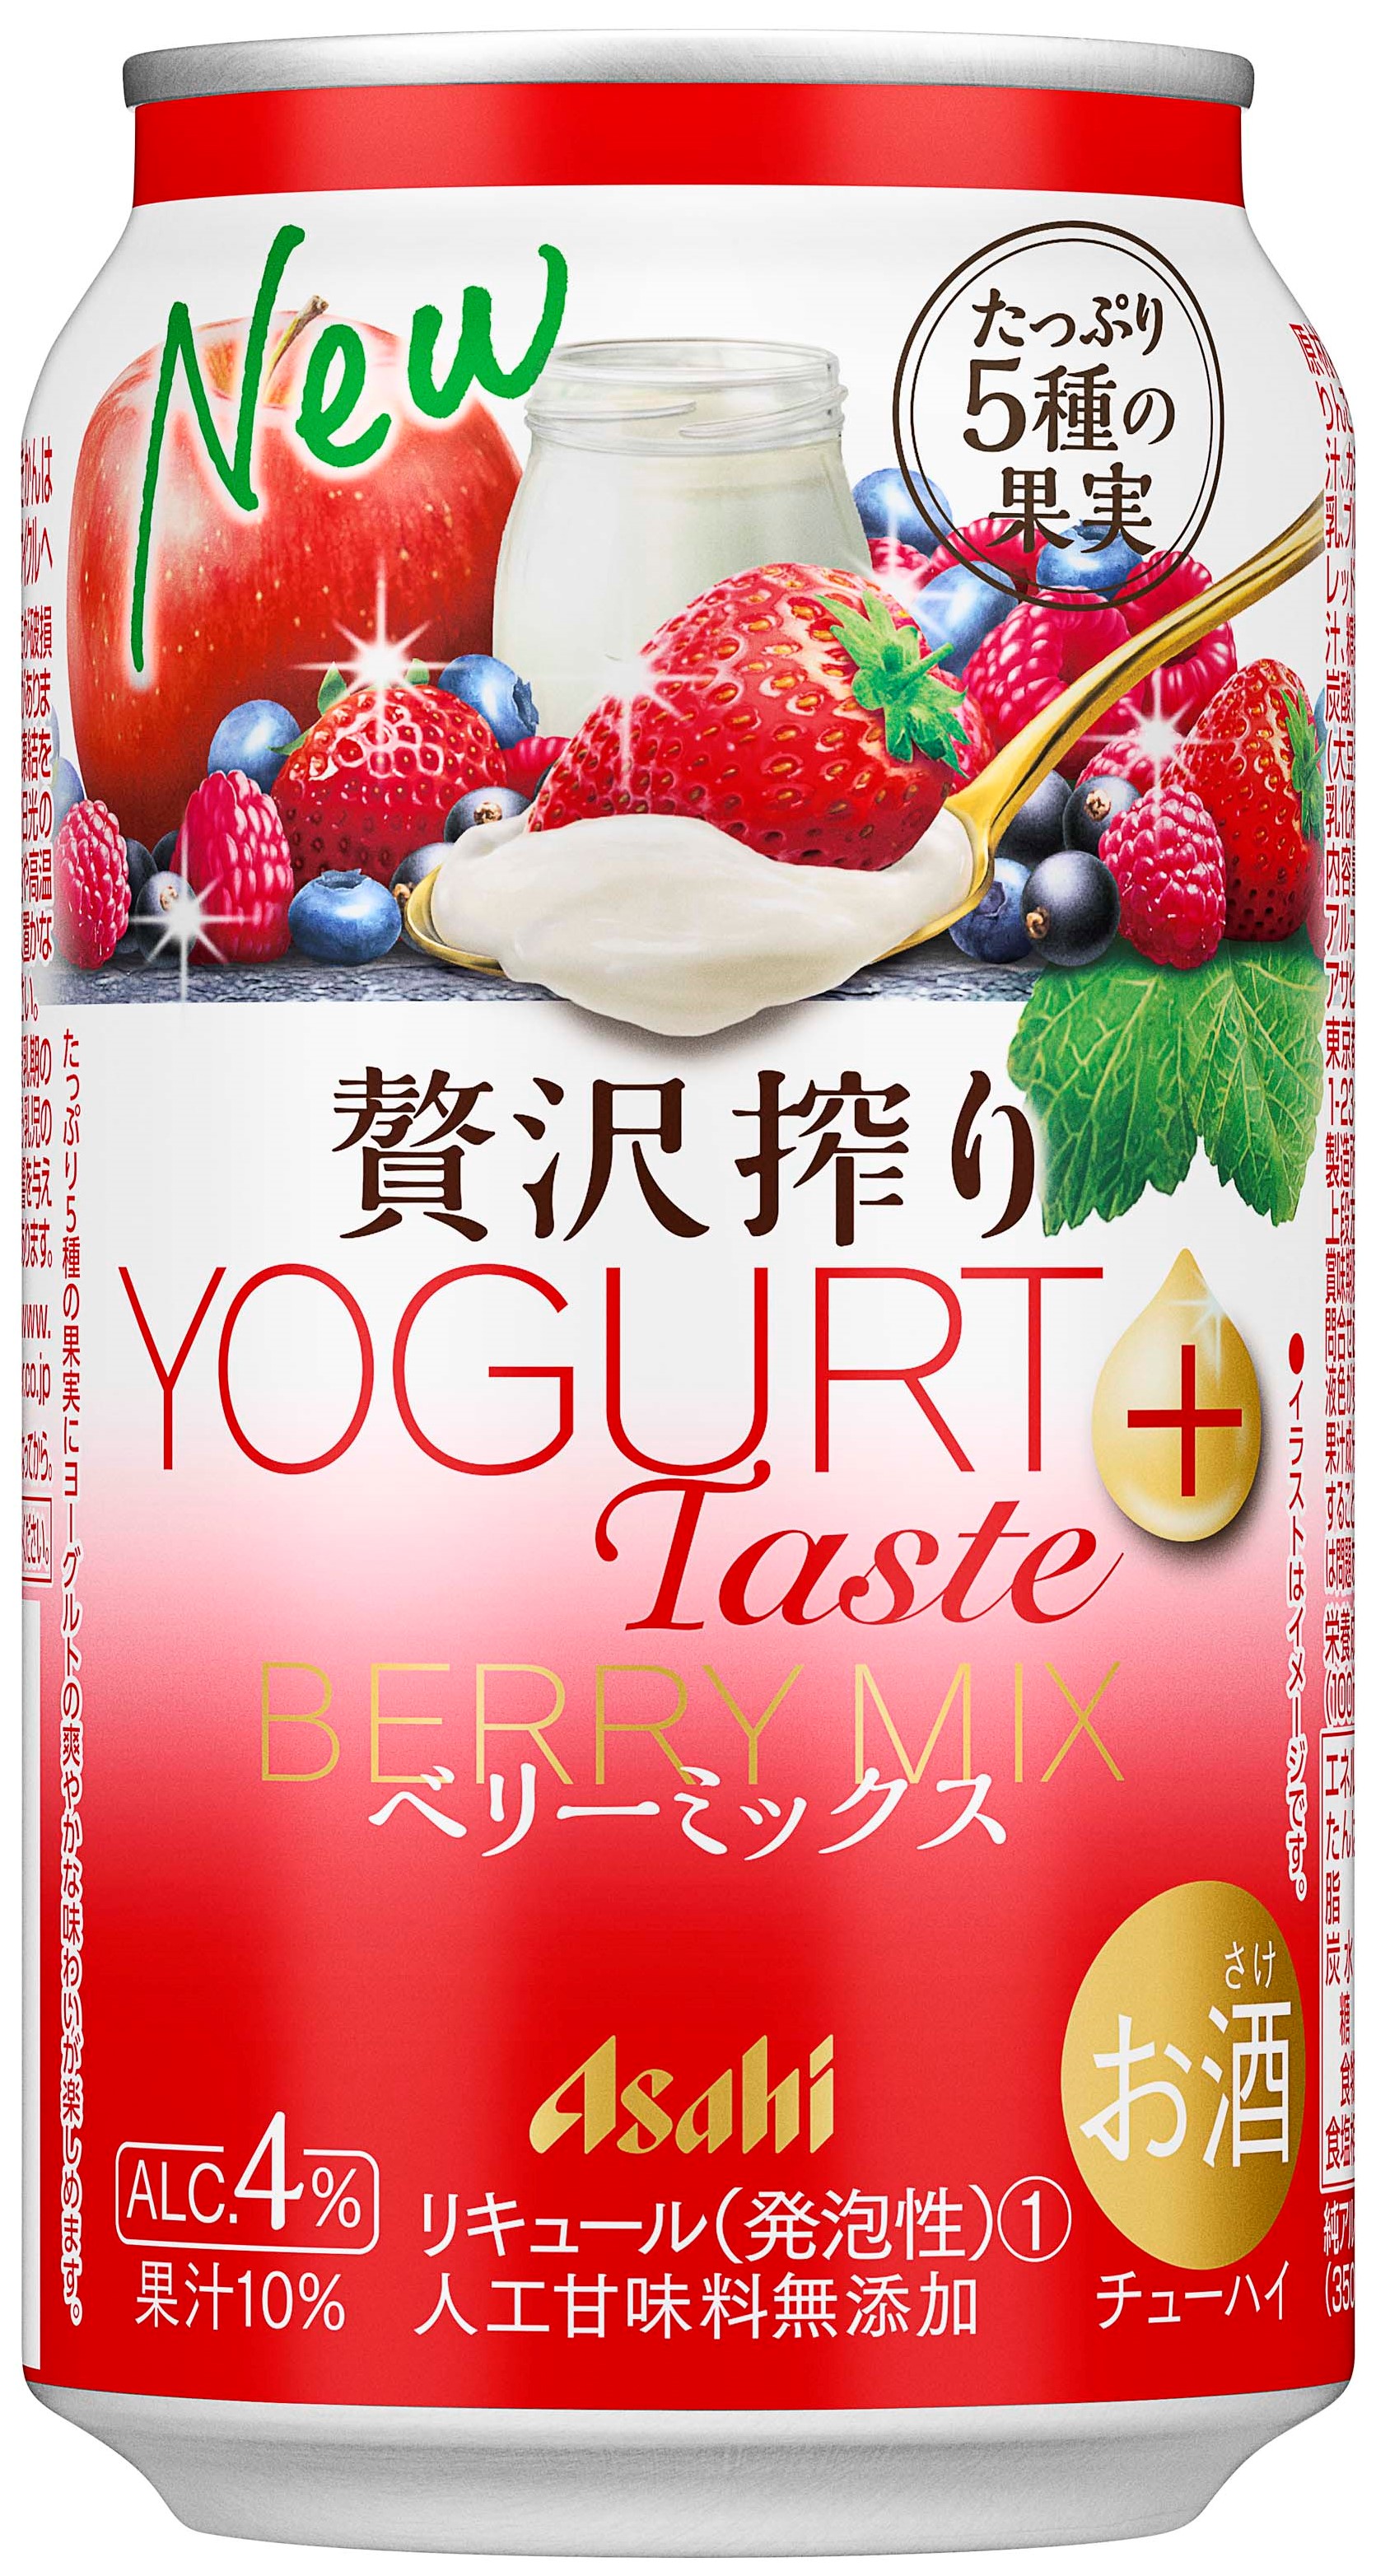 鮮醇果榨YOGURT Taste+ 綜合莓果